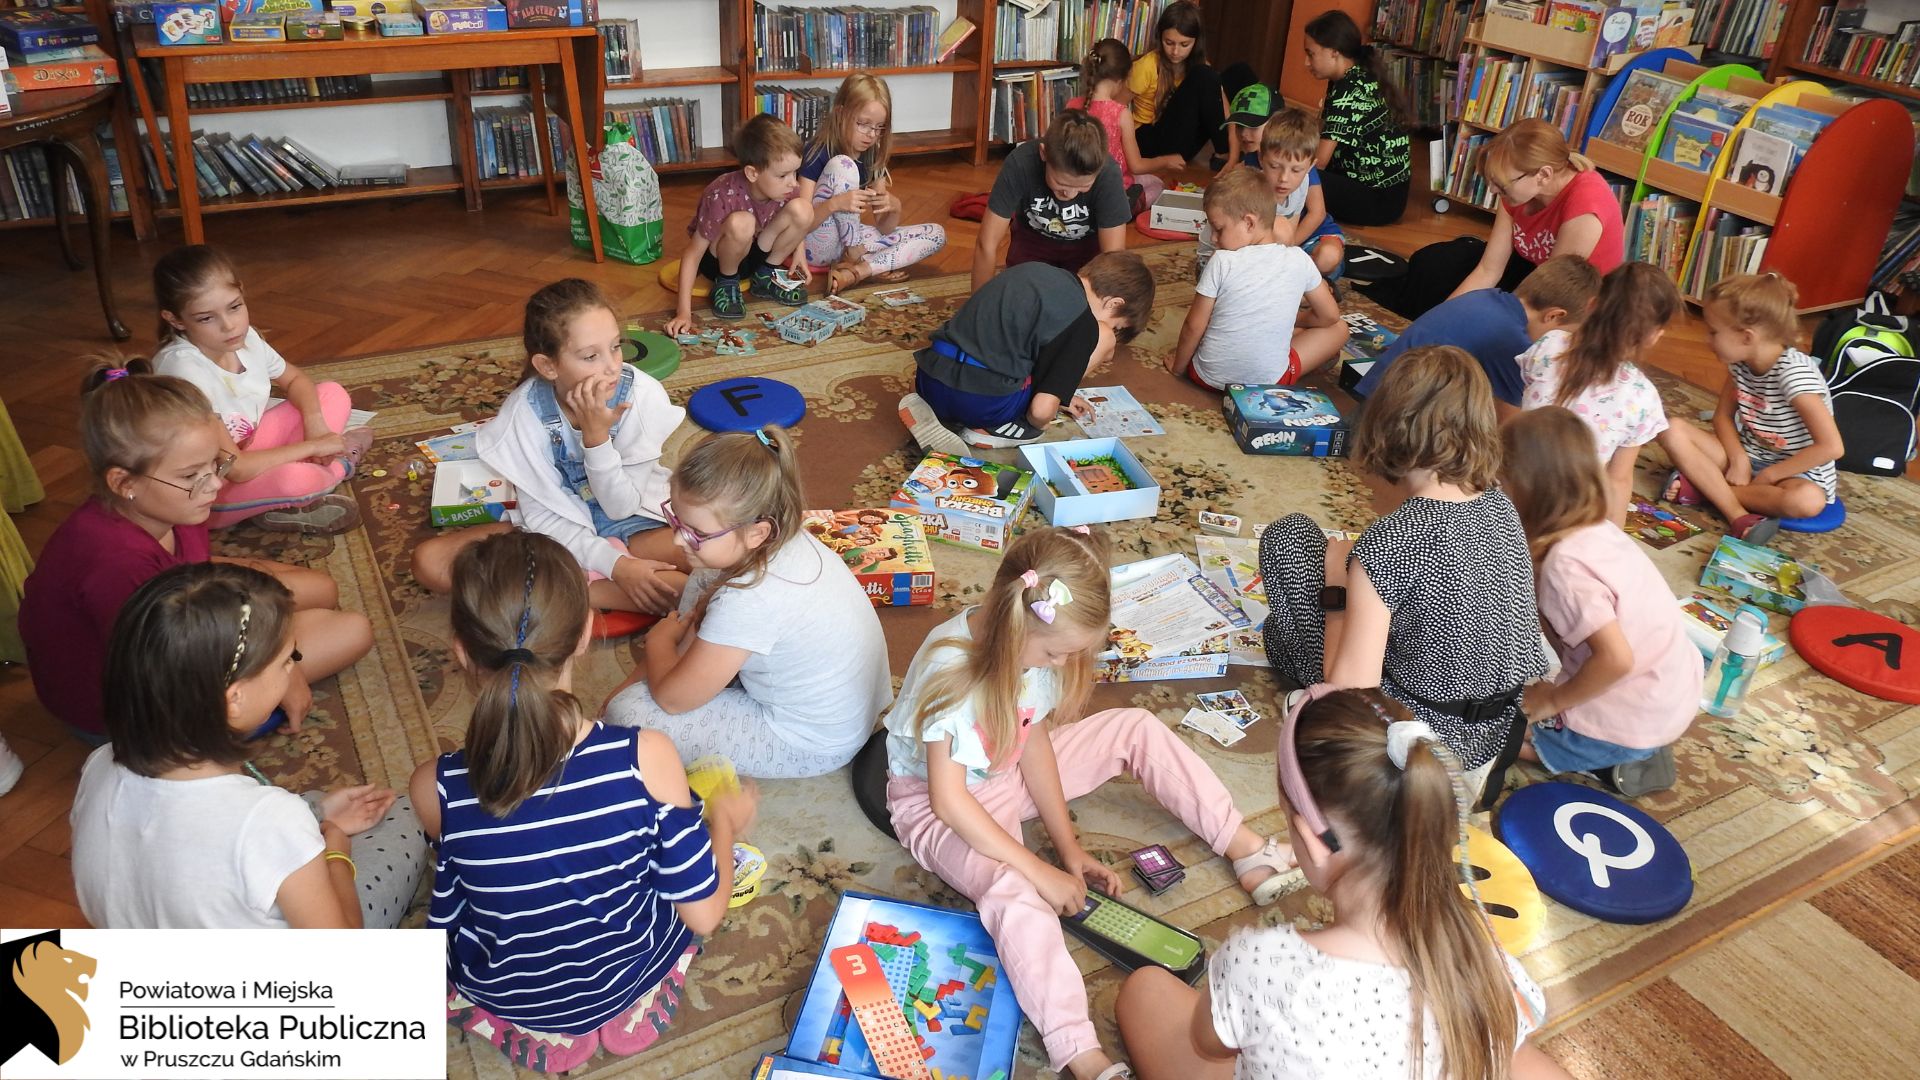 Duża grupa dzieci siedzi na dywanie. Są podzieleni na małe grupki. Przed dziećmi leżą rozłożone różne gry planszowe. W tle regały z książkami.